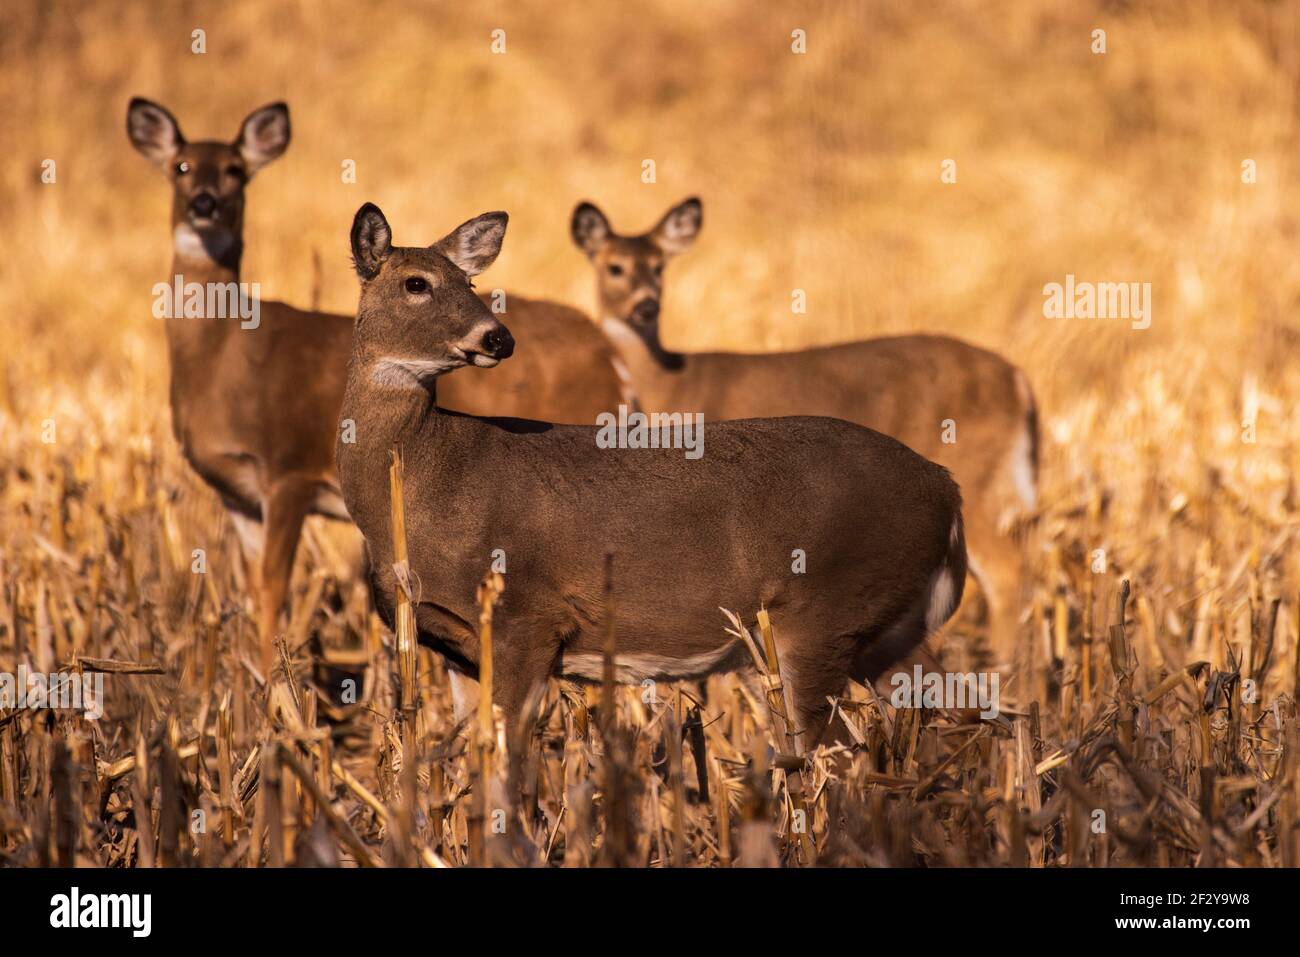 Trois cerfs se rasent les oreilles et se tiennent à l'affût lorsqu'ils entendent un son tout en se nourrissant dans le chaume d'un champ de maïs près de Hambourg, Illinois, États-Unis, le fév Banque D'Images